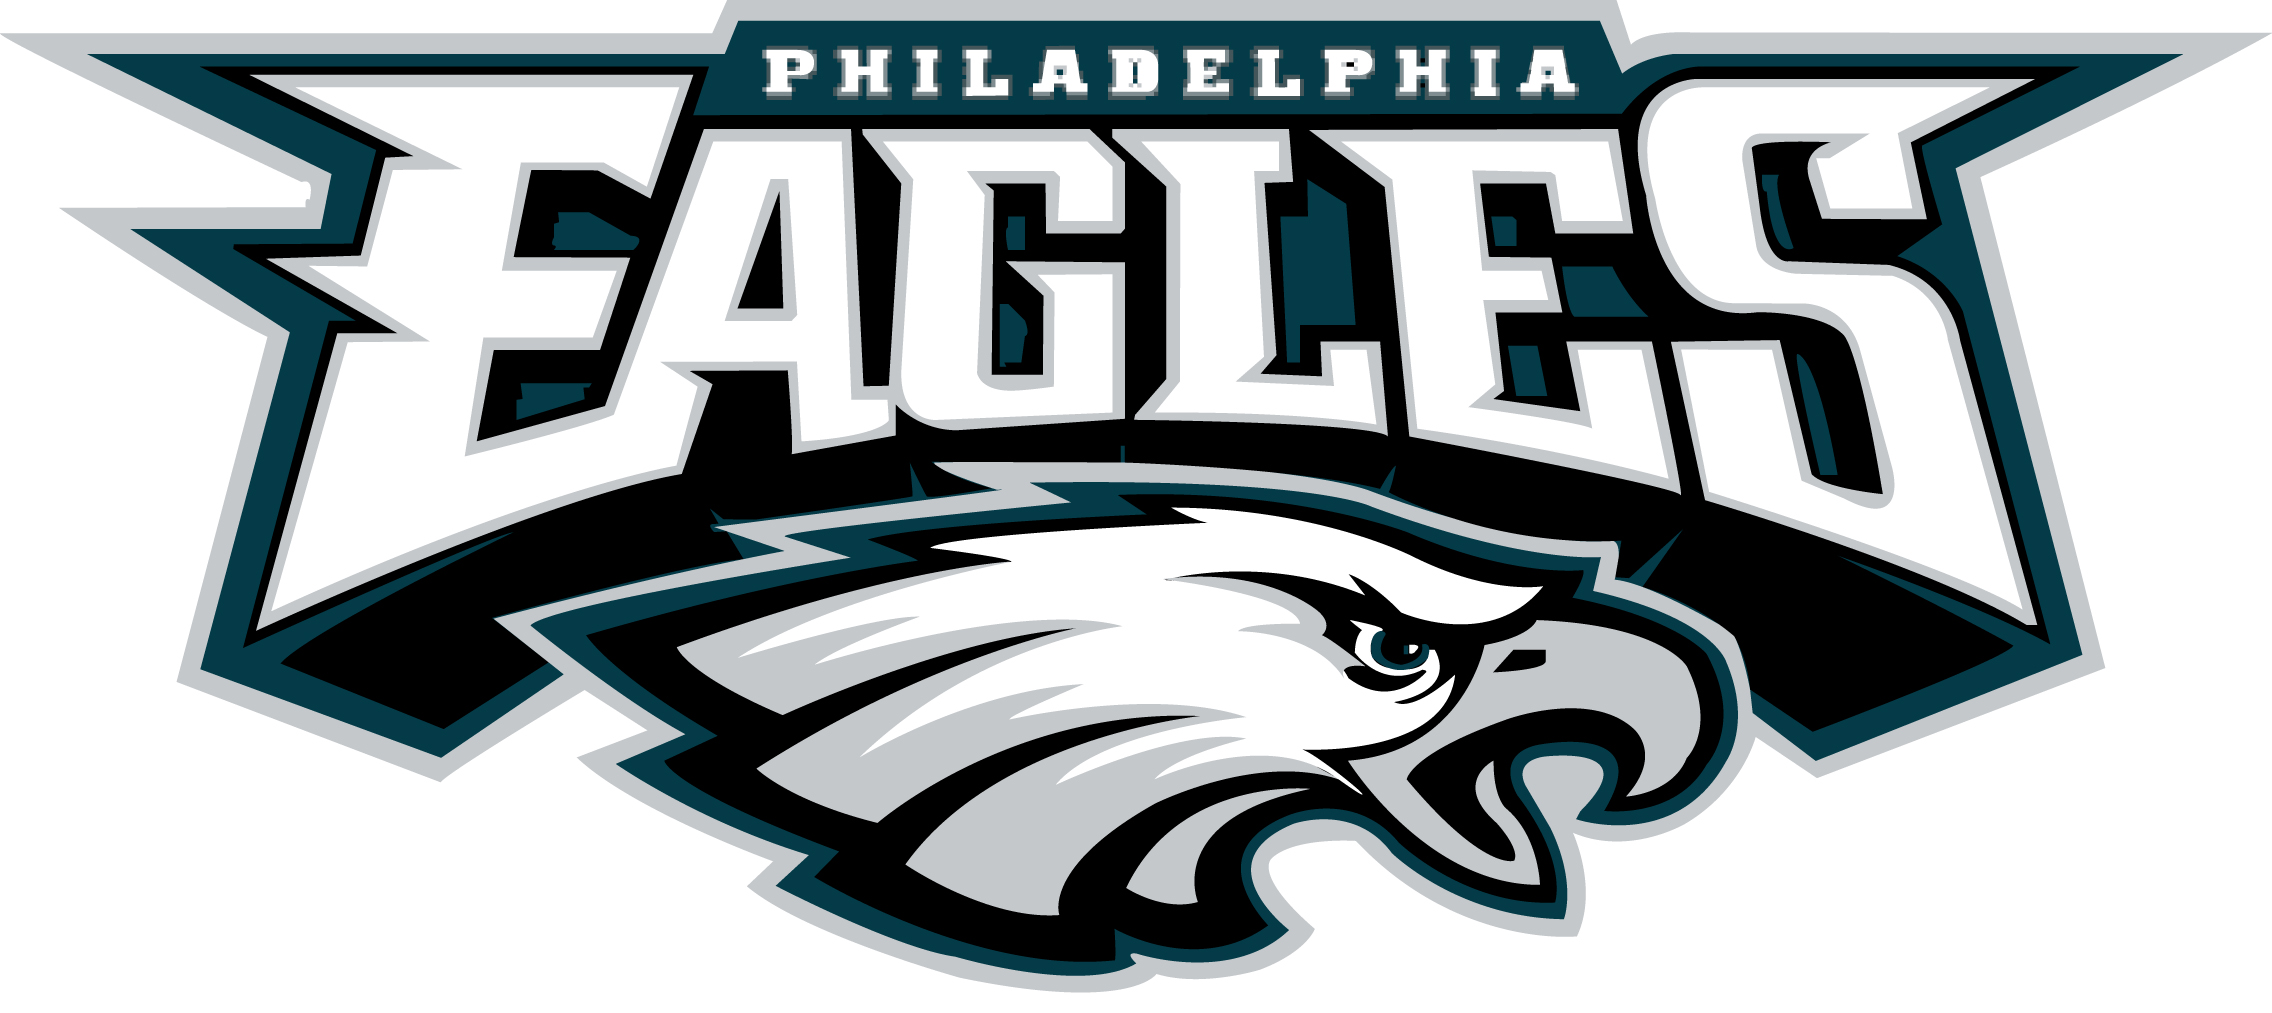 Philadelphia Eagles Nfl Football R Wallpaper Background